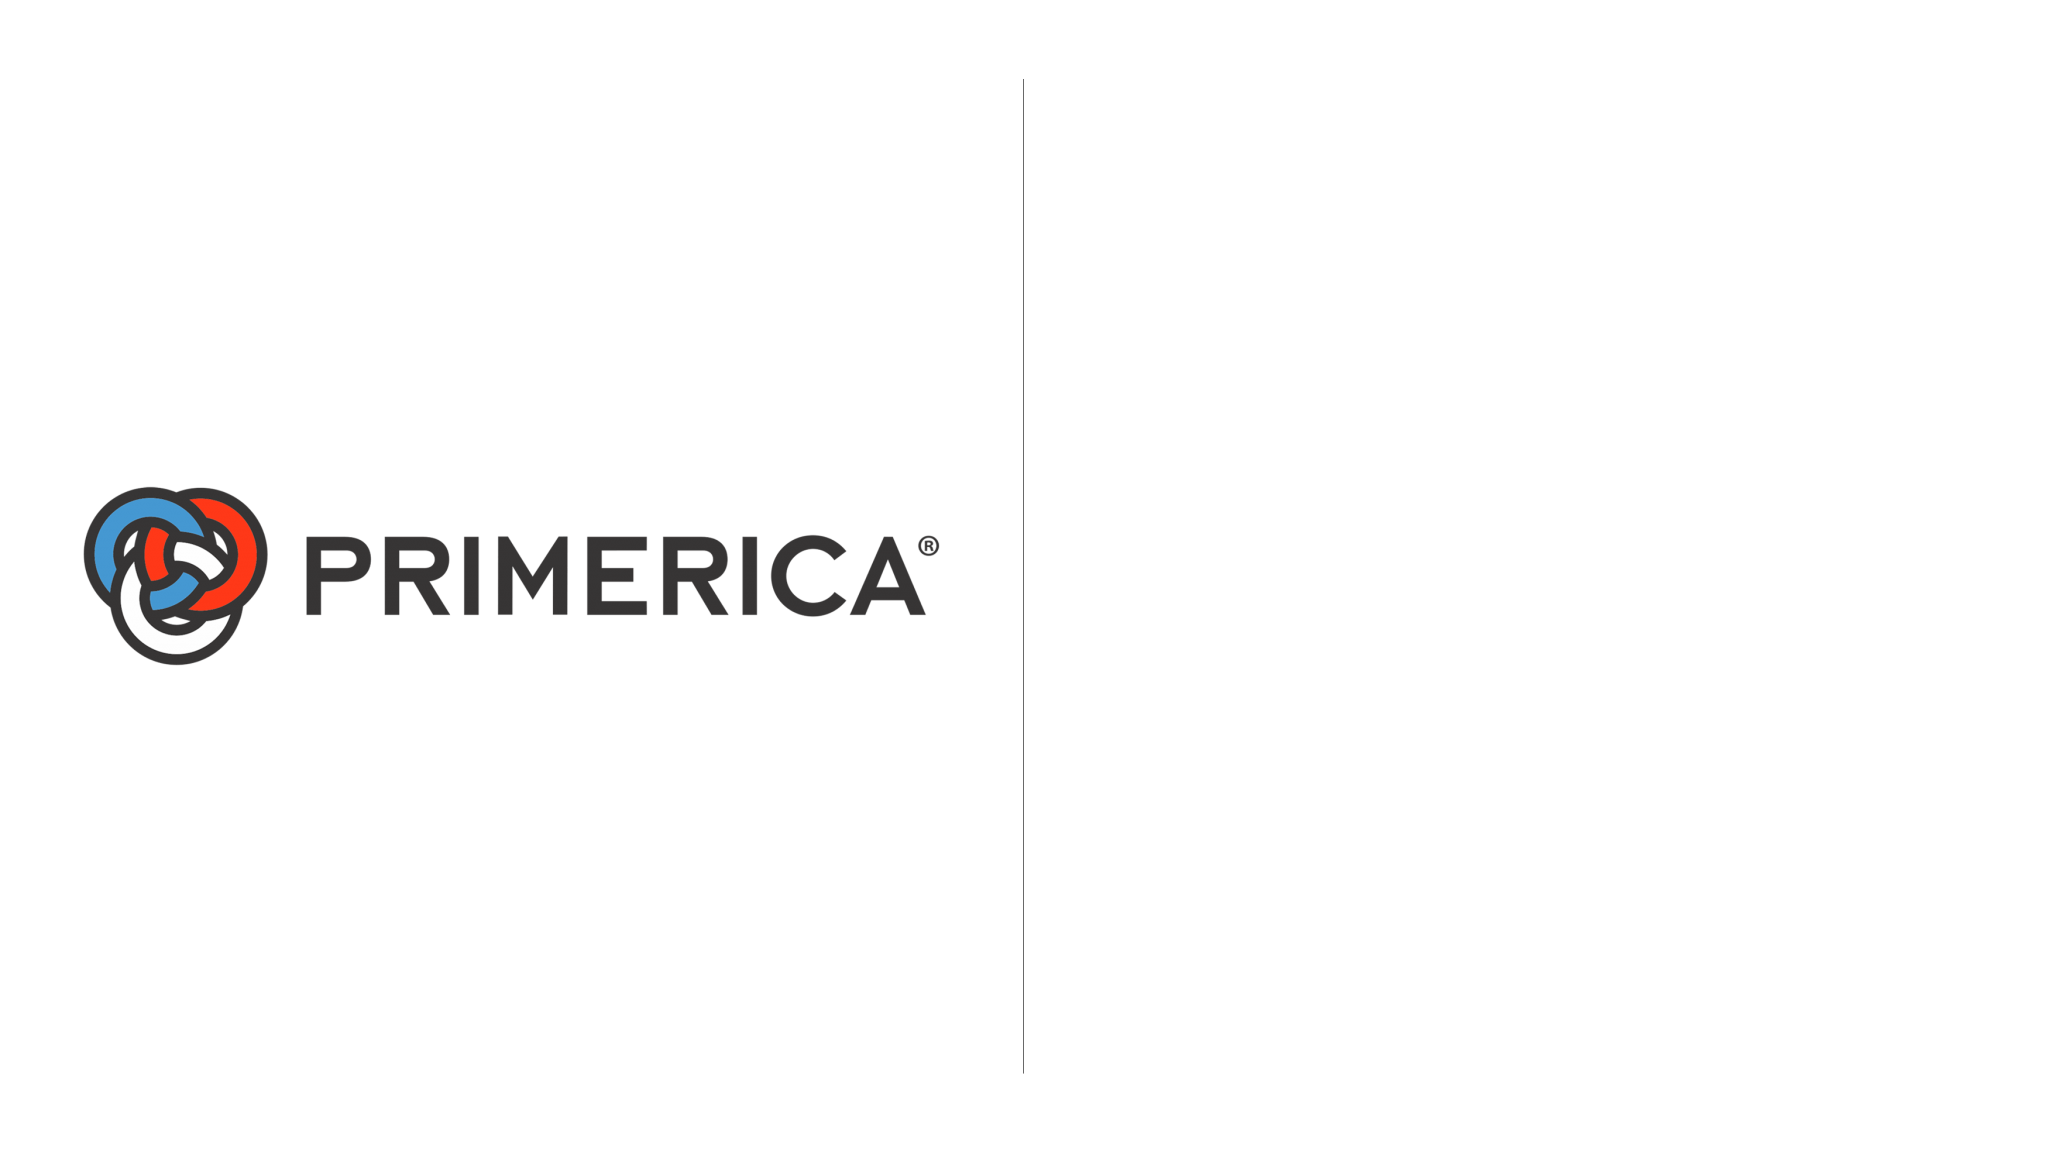 Prime America Logo - Primerica logo | Dwglogo